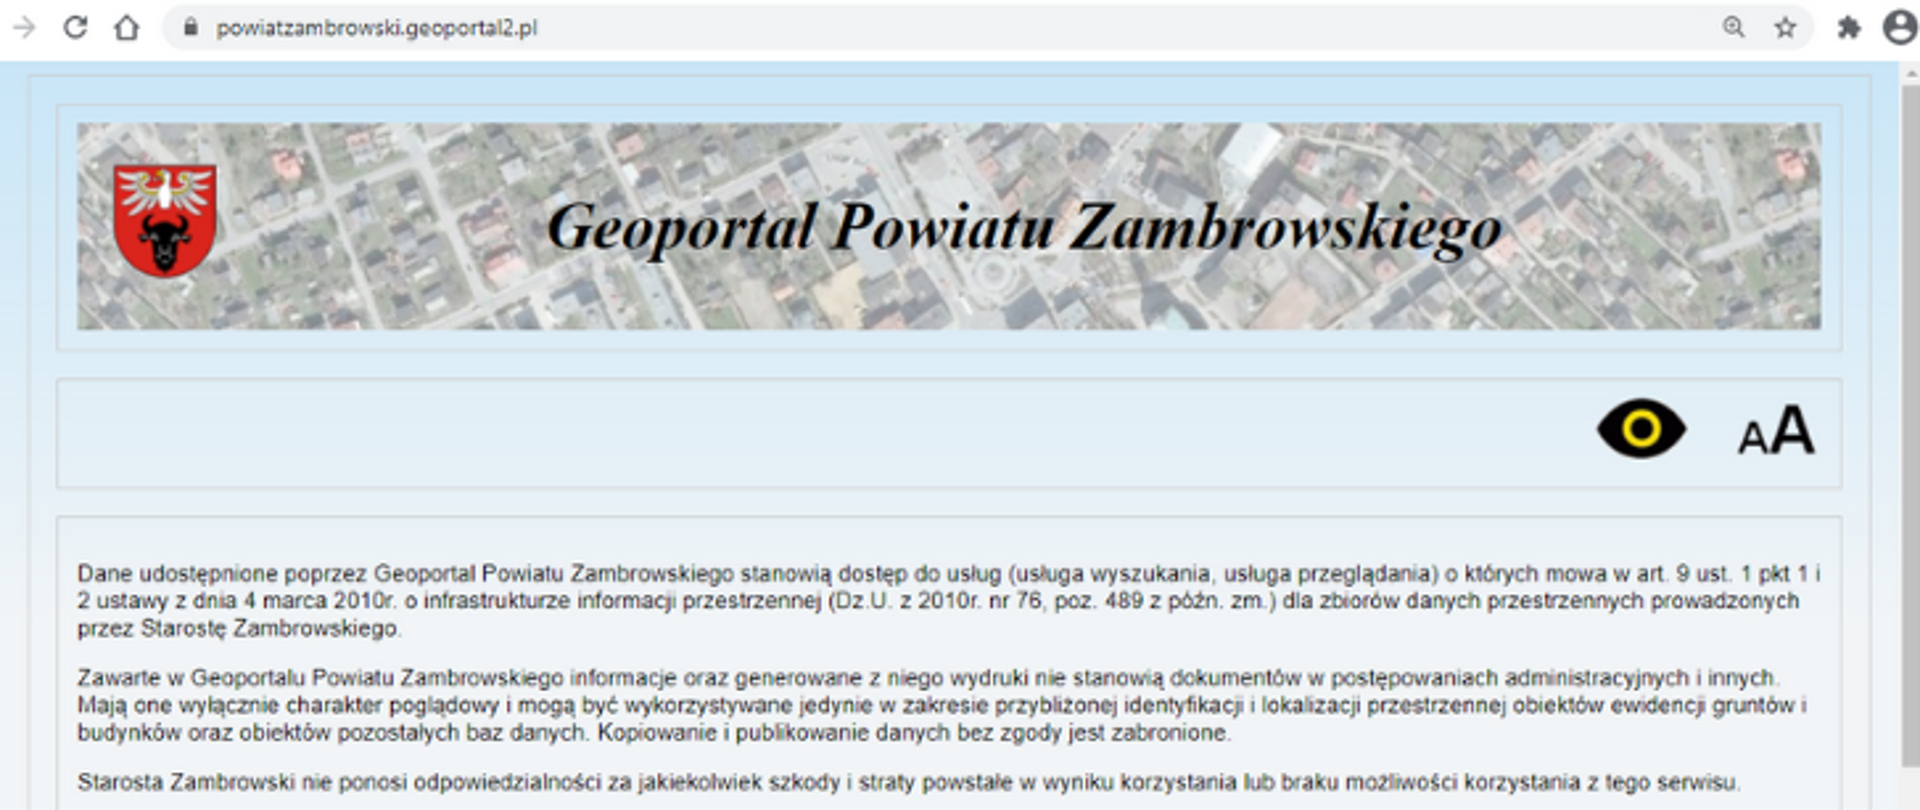 obrazek jest screenem strony Geoportalu Powiatu Zambrowskiego